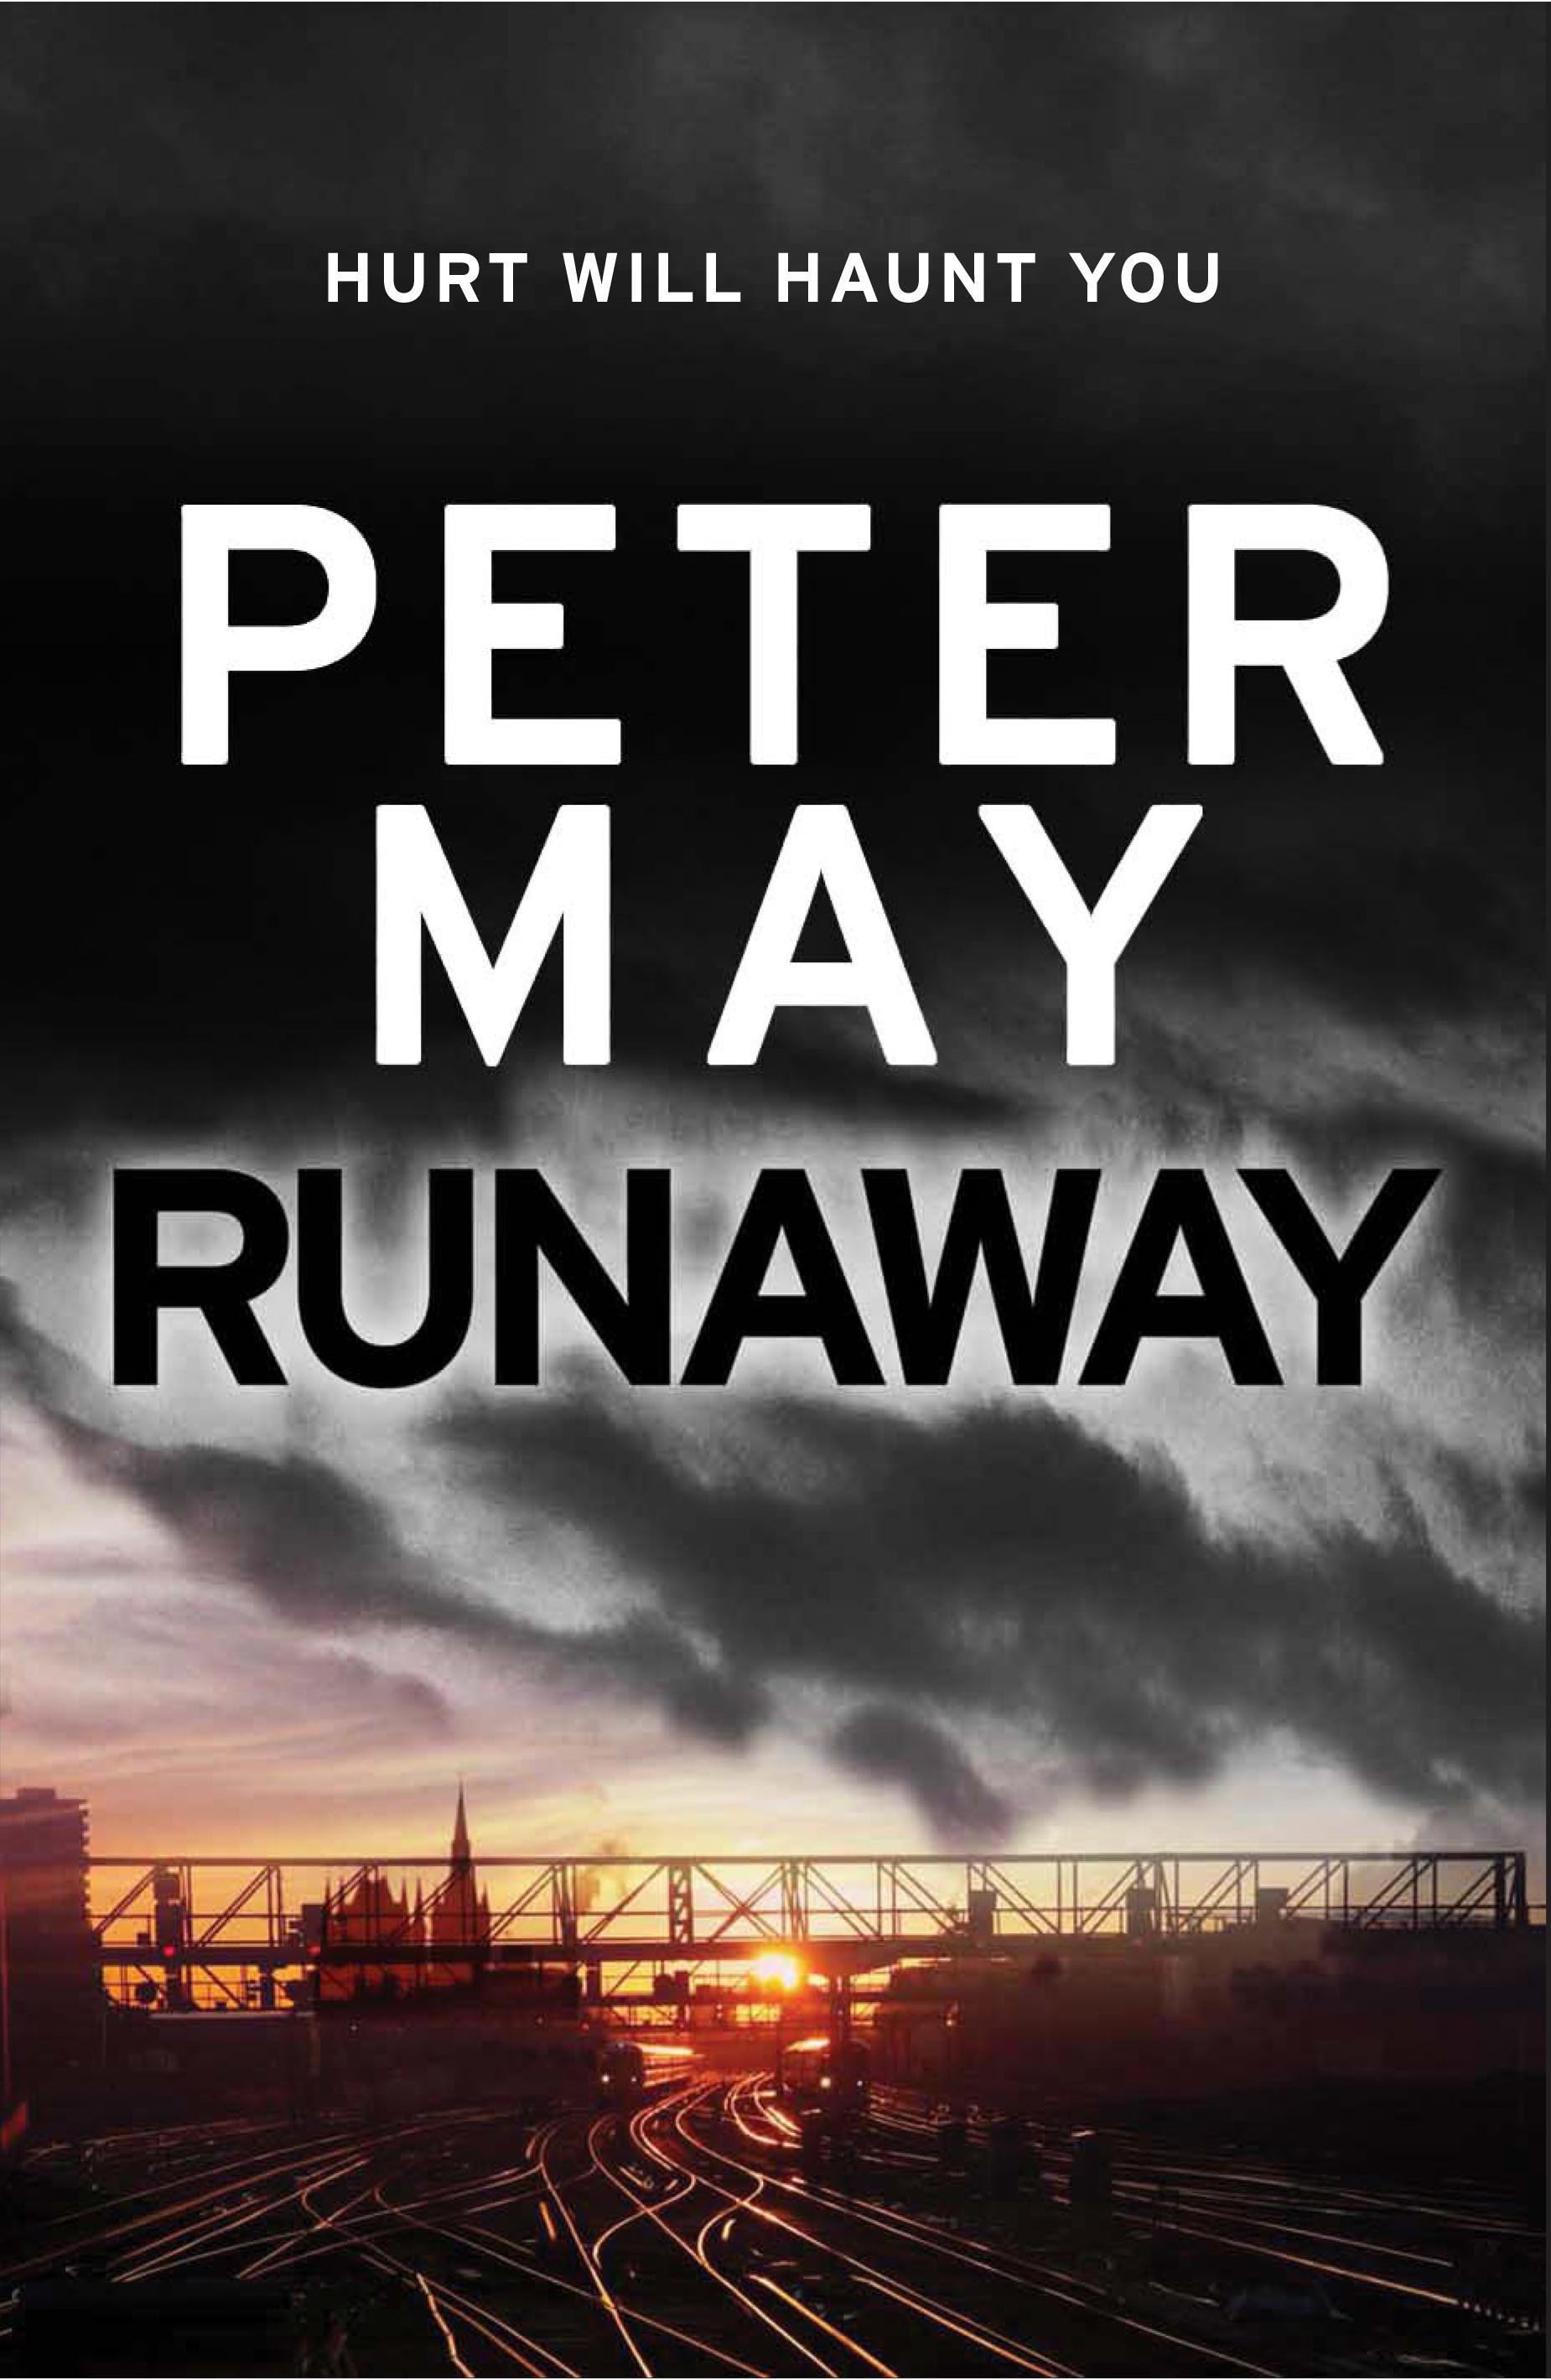 Runaway by Peter May